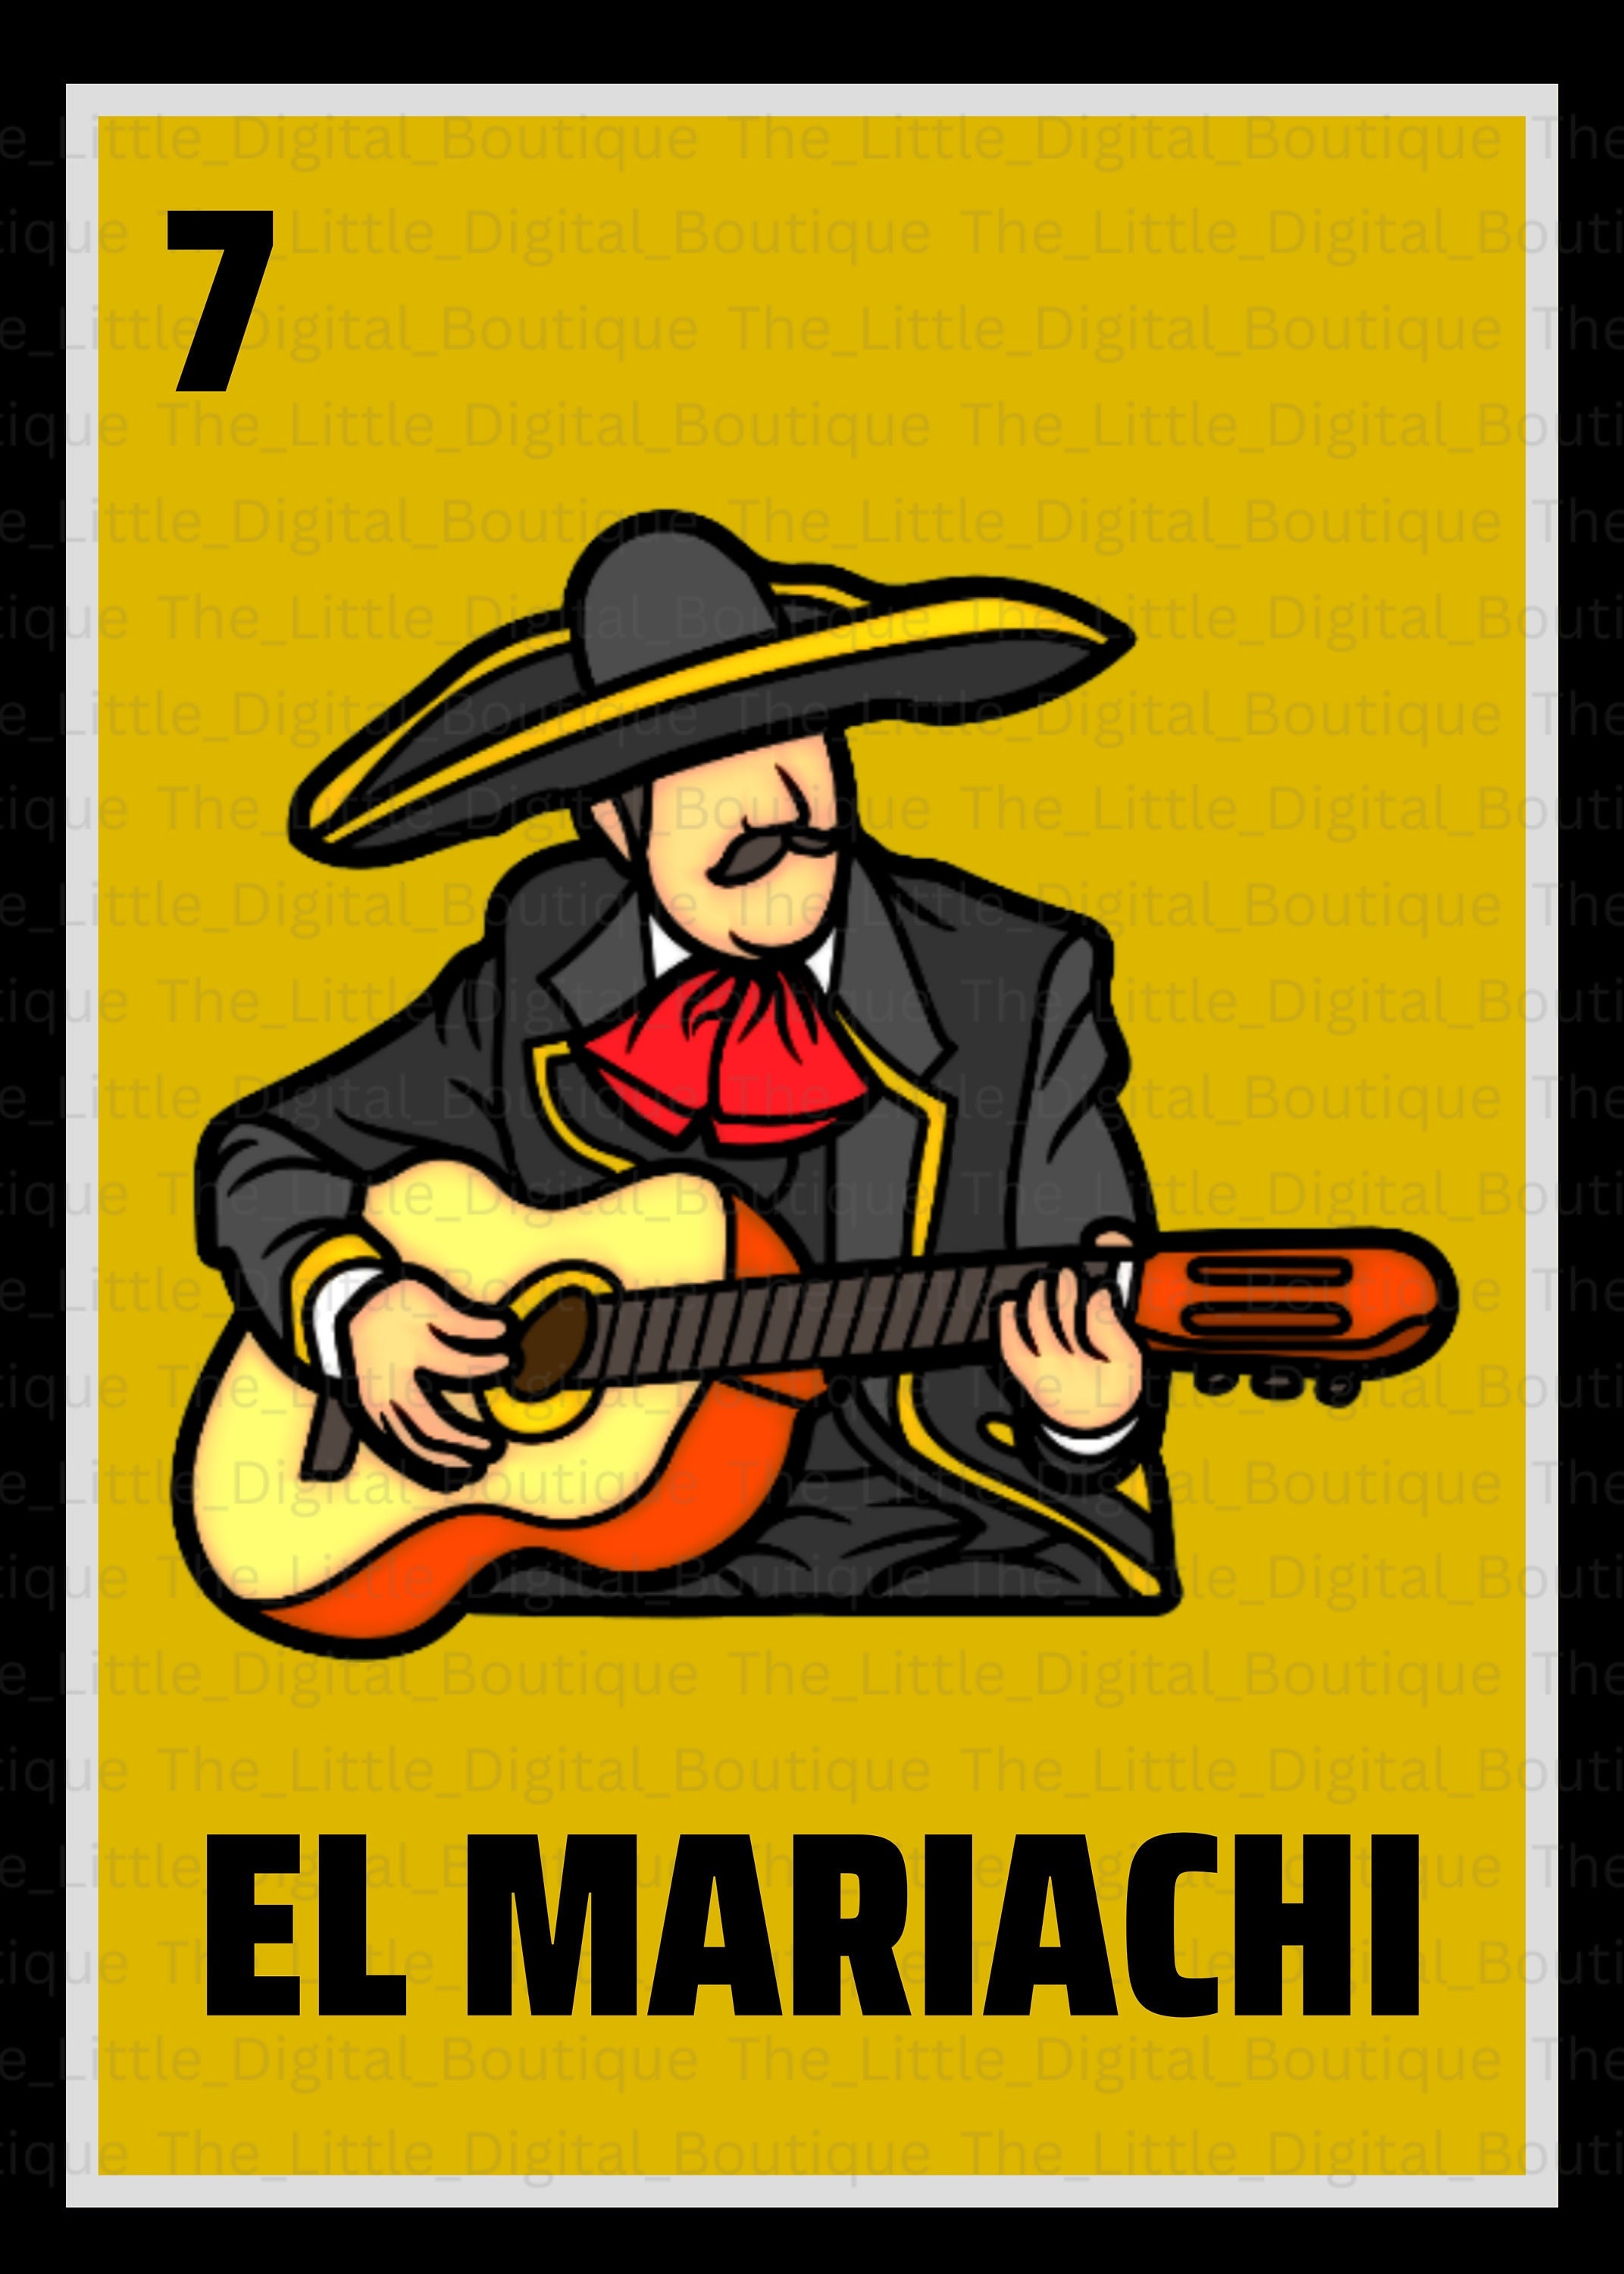 The guitar in the wood of El Mariachi (Antonio Banderas) in